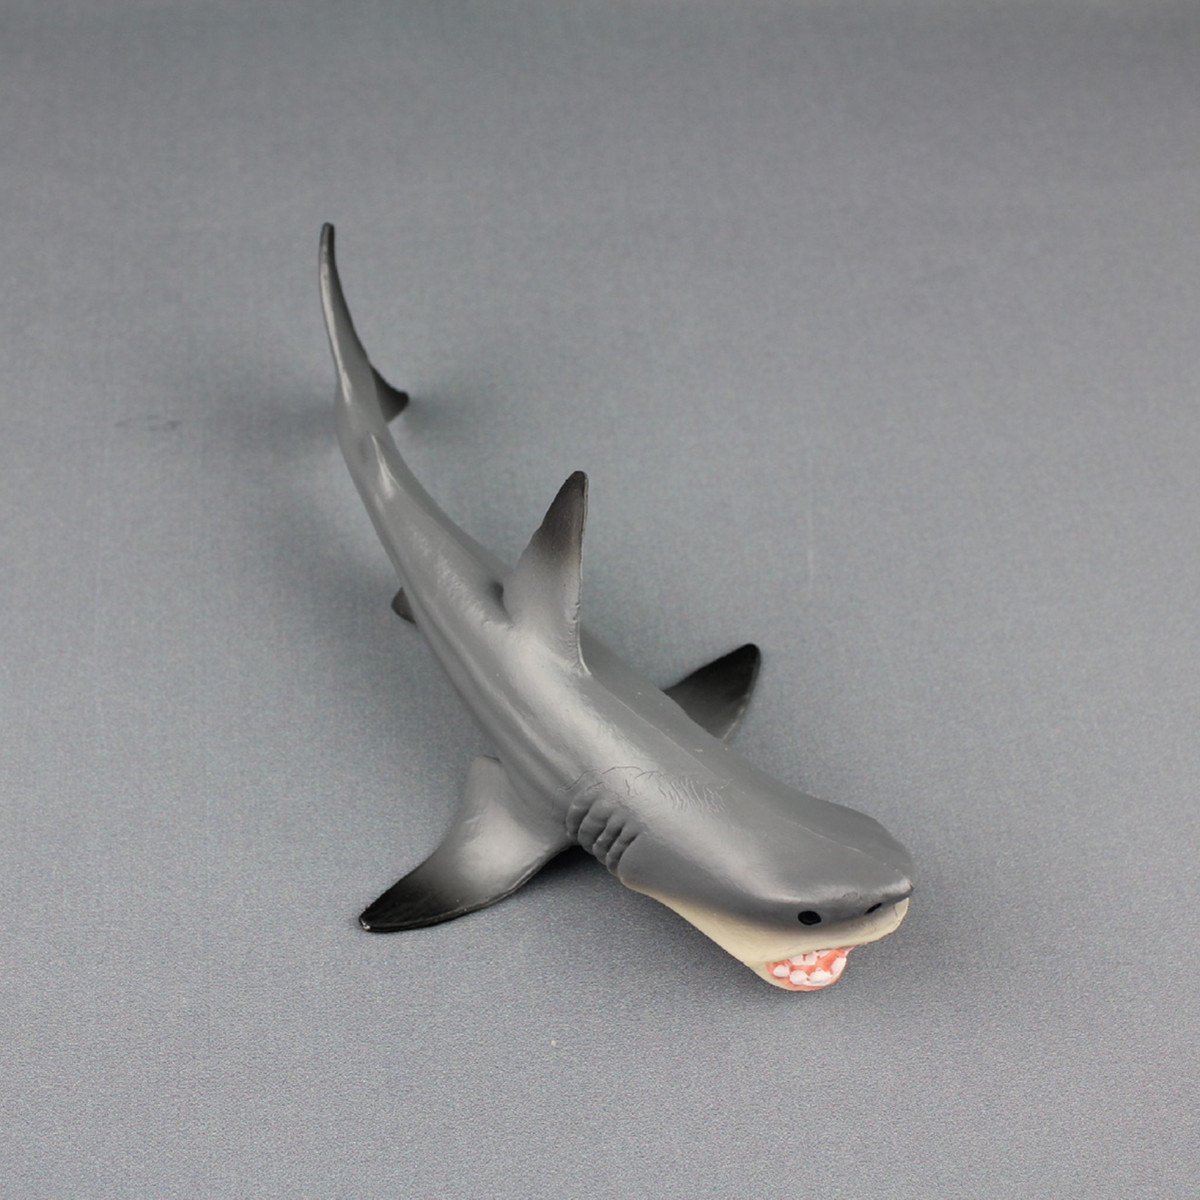 Megalodon-Prehistoric-Shark-Toy-Model-Diecast-Model-Desk-Decor-Home-1361940